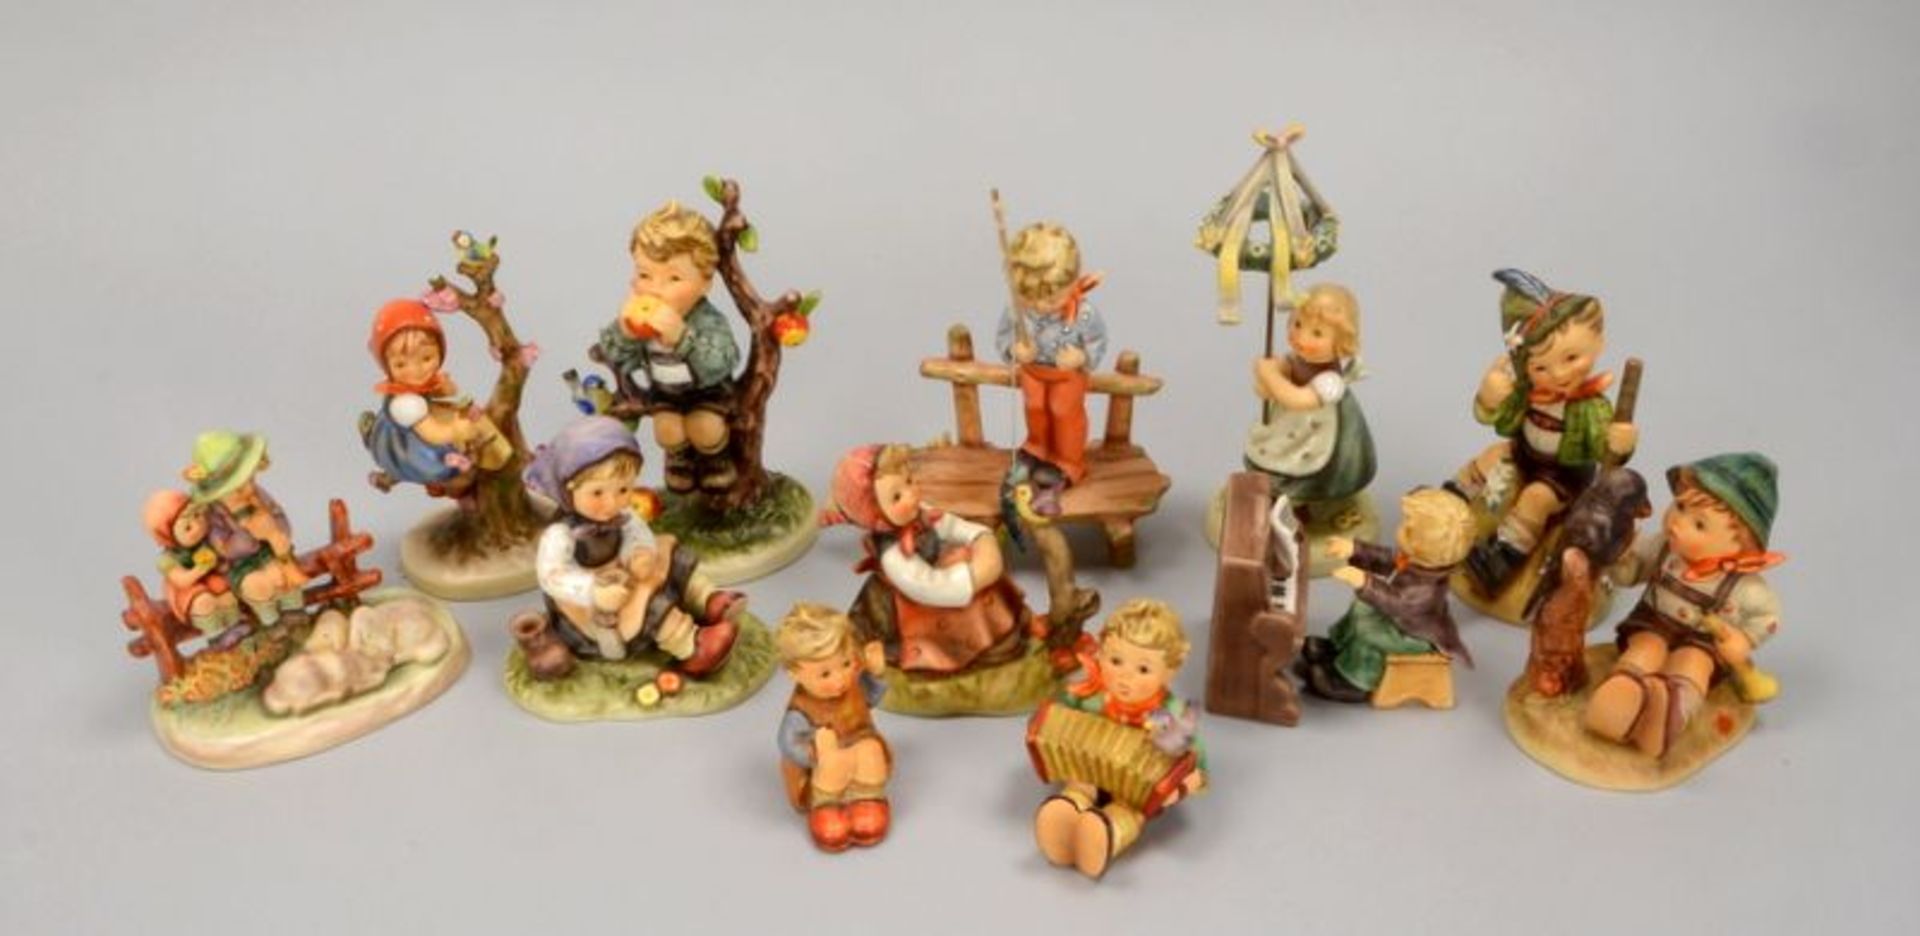 Hummel/Goebel, Porzellanfiguren, verschiedene Größen und Ausführungen, 12 Stück - Bild 2 aus 5